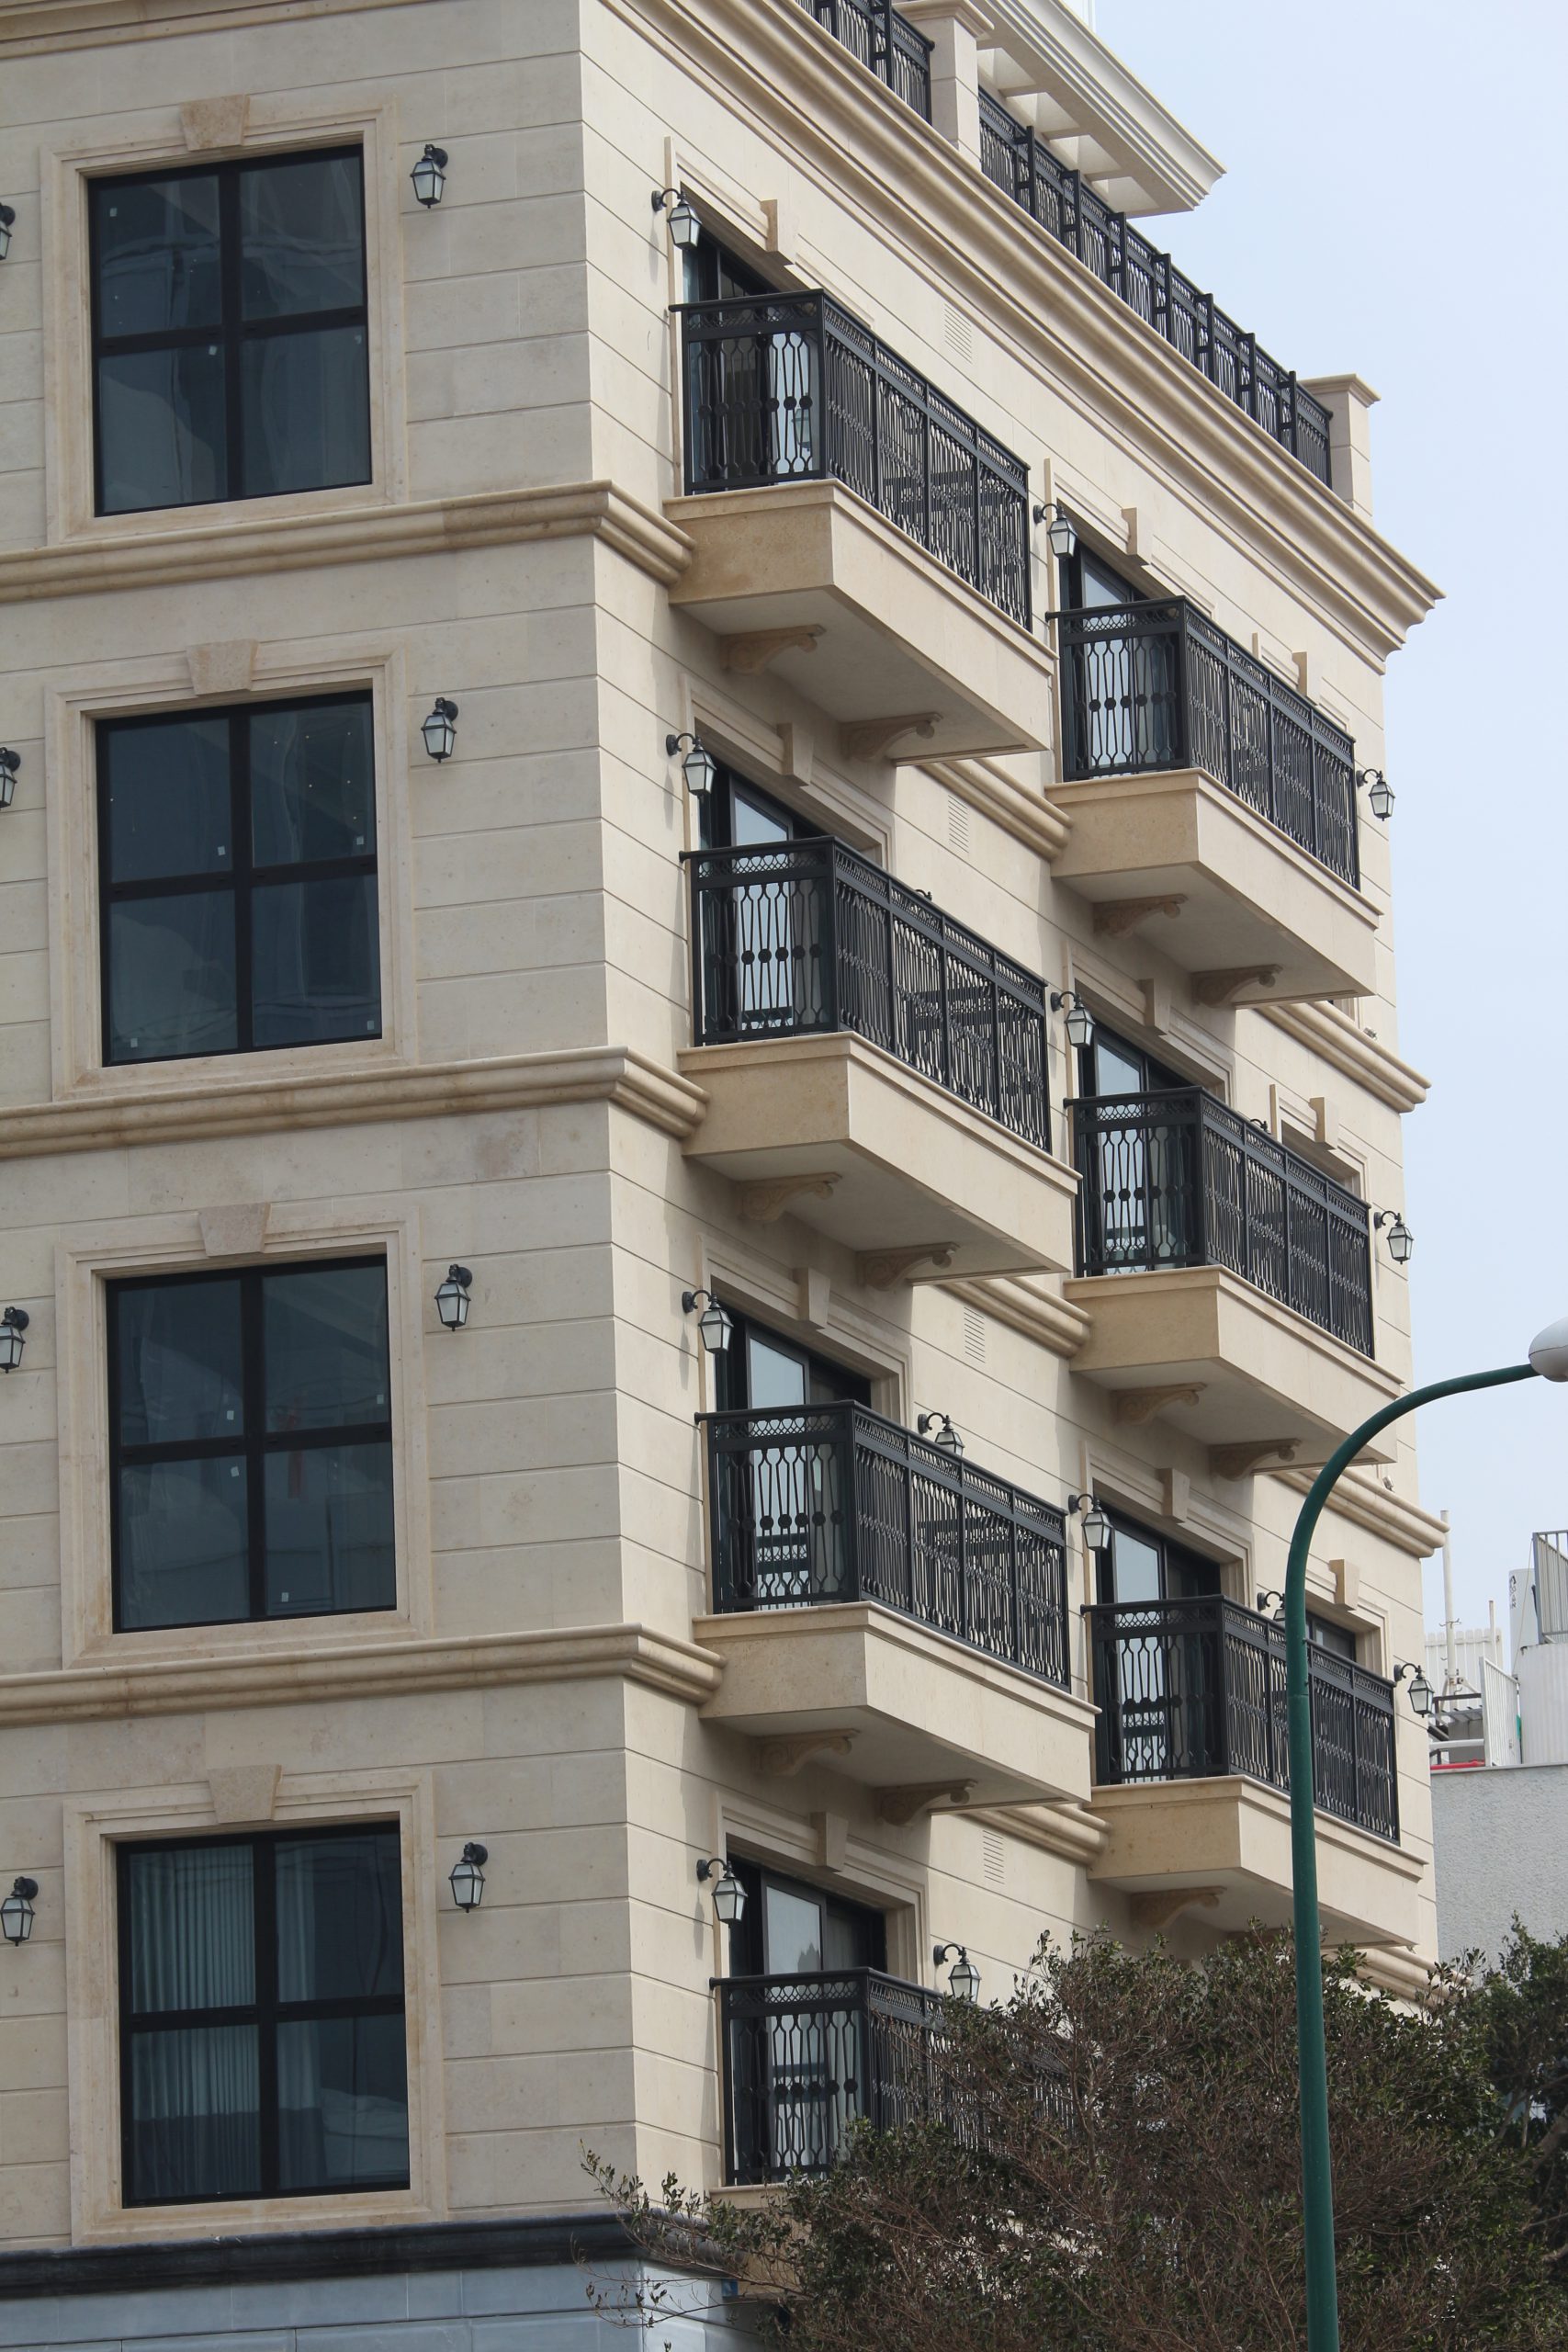 התקנה של מעקות למרפסות בבניין מגורים